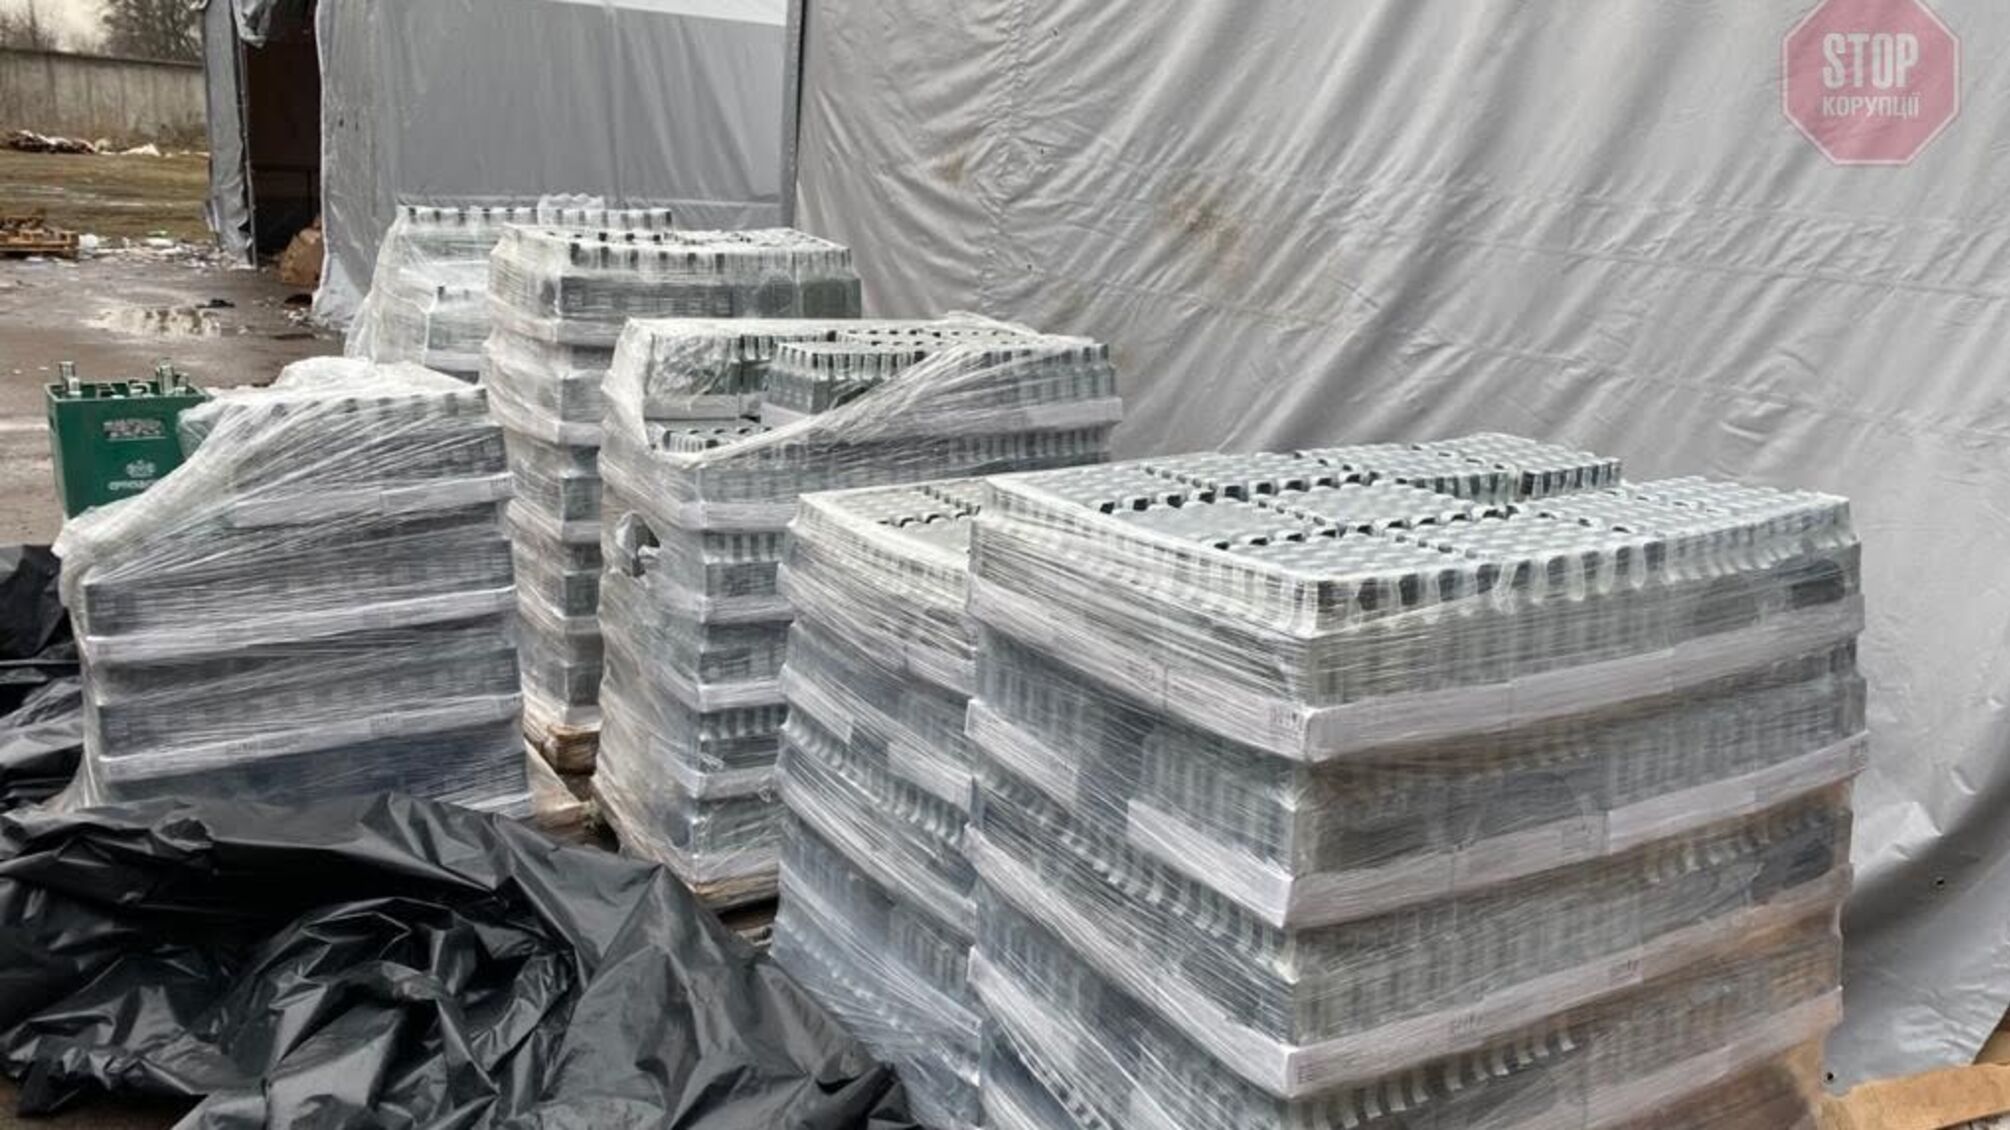 У Львові виявили понад три тис пляшок “паленої” горілки